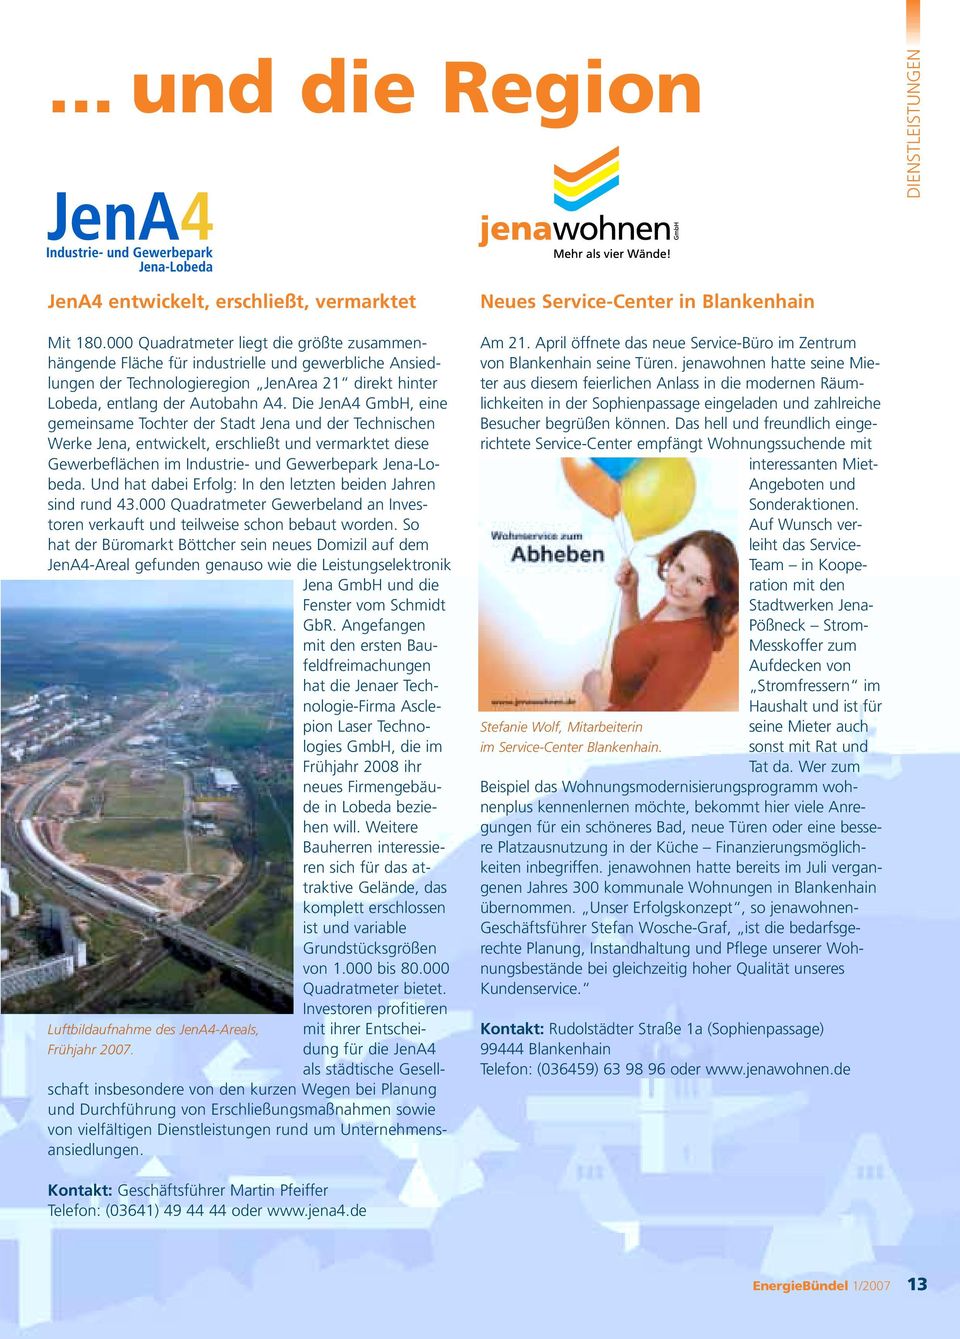 Die JenA GmbH, eine gemeinsame Tochter der Stadt Jena und der Technischen Werke Jena, entwickelt, erschließt und vermarktet diese Gewerbeflächen im Industrie- und Gewerbepark Jena-Lobeda.